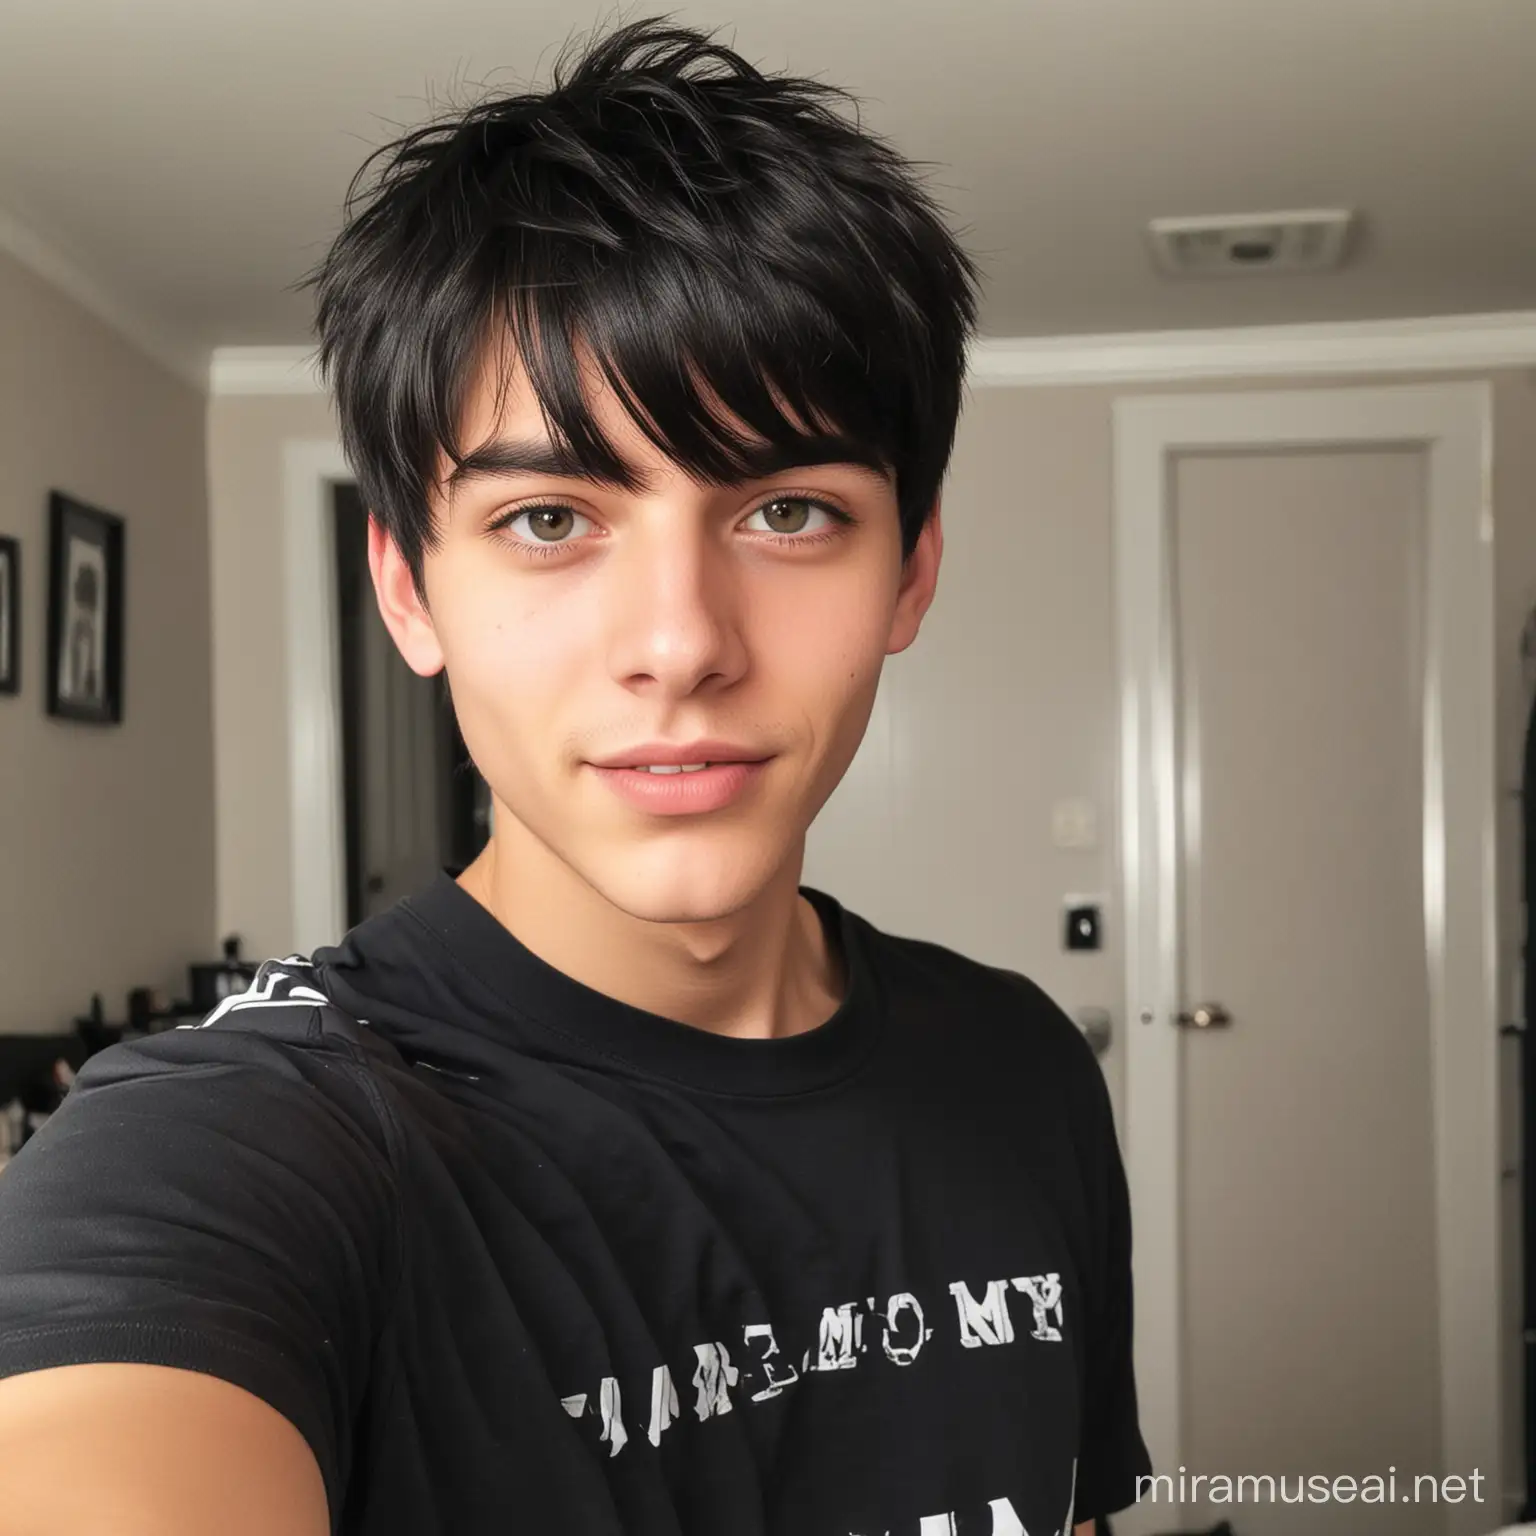 Teenage Boy with Black Hair Taking Selfie in Bedroom